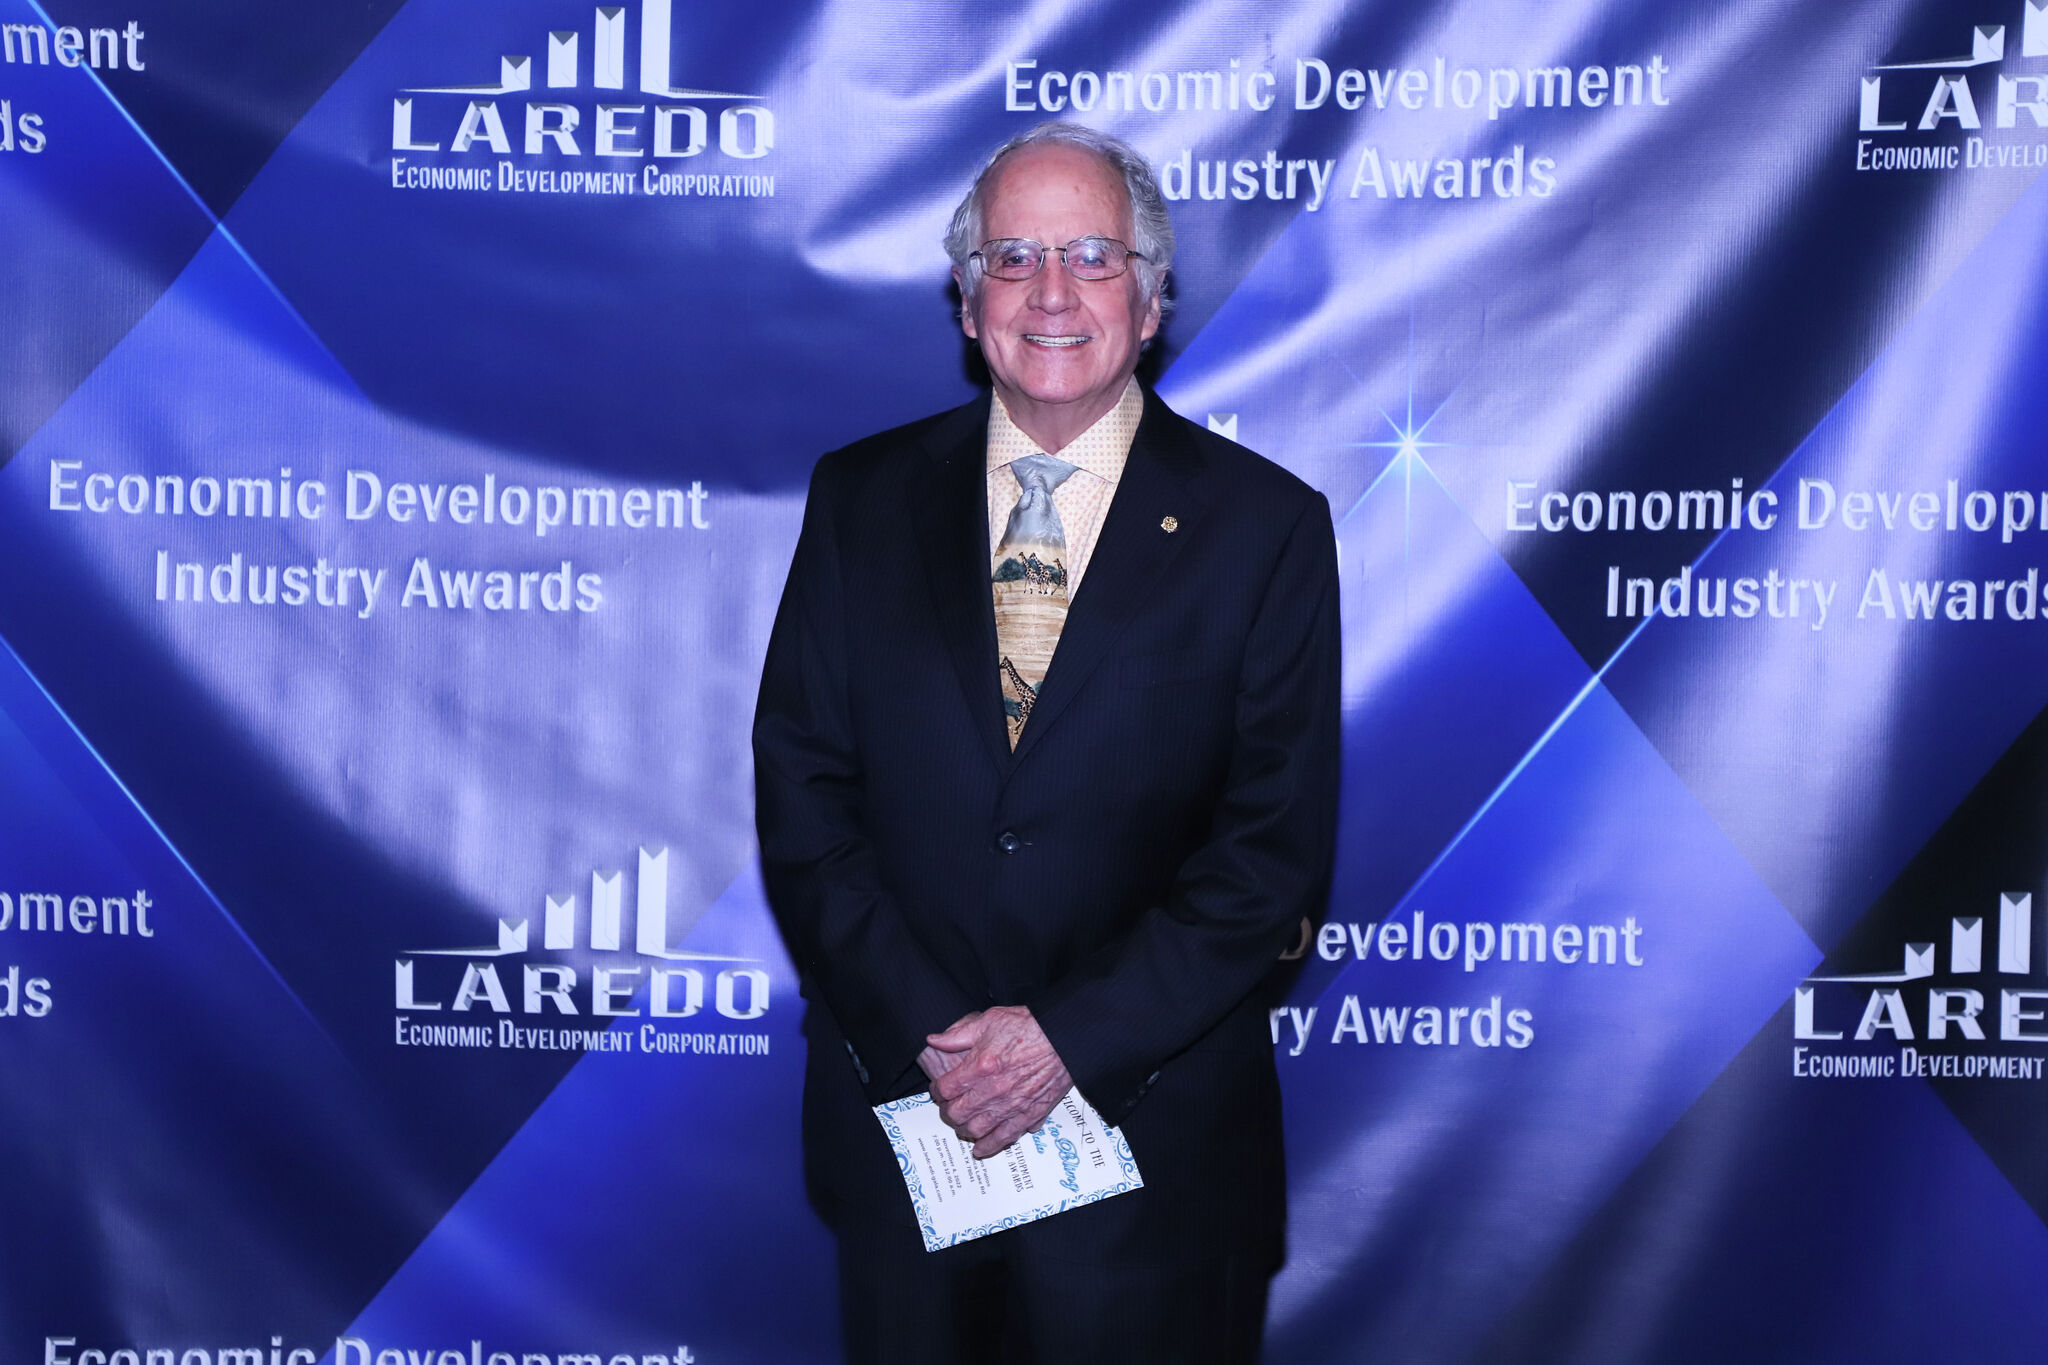 Laredo Economic Development